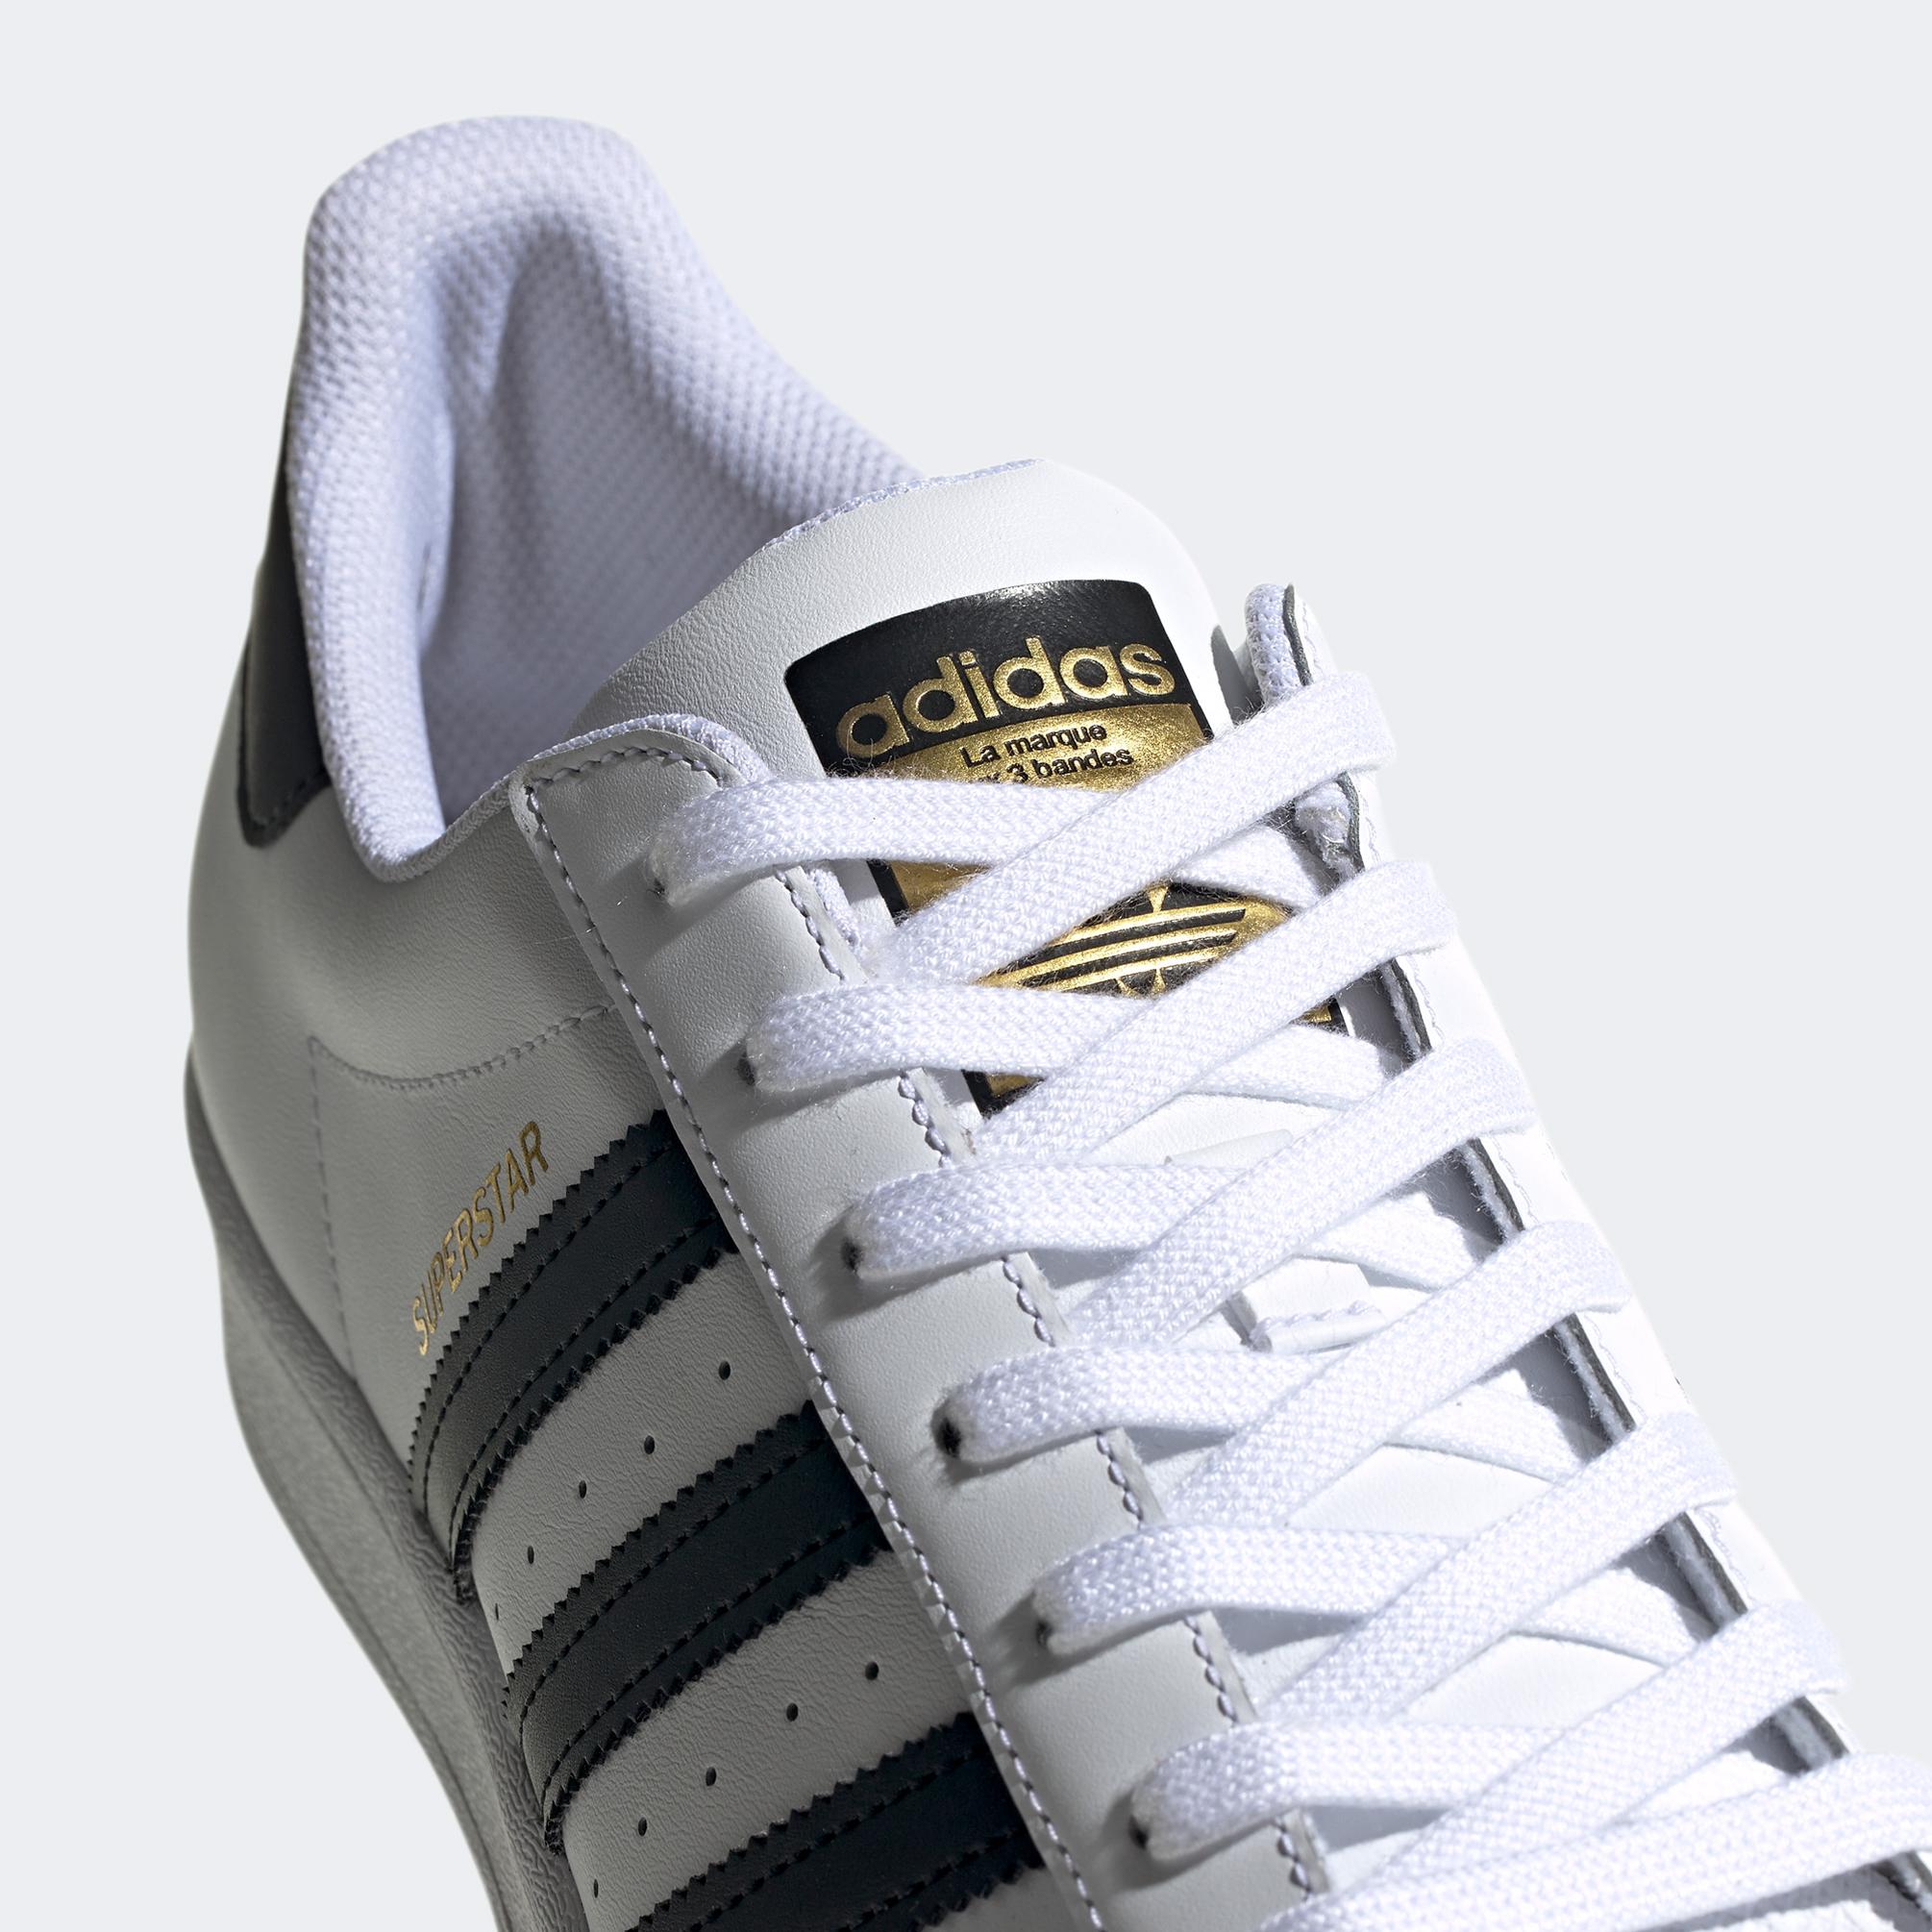  adidas Superstar Unisex Beyaz Spor Ayakkabı